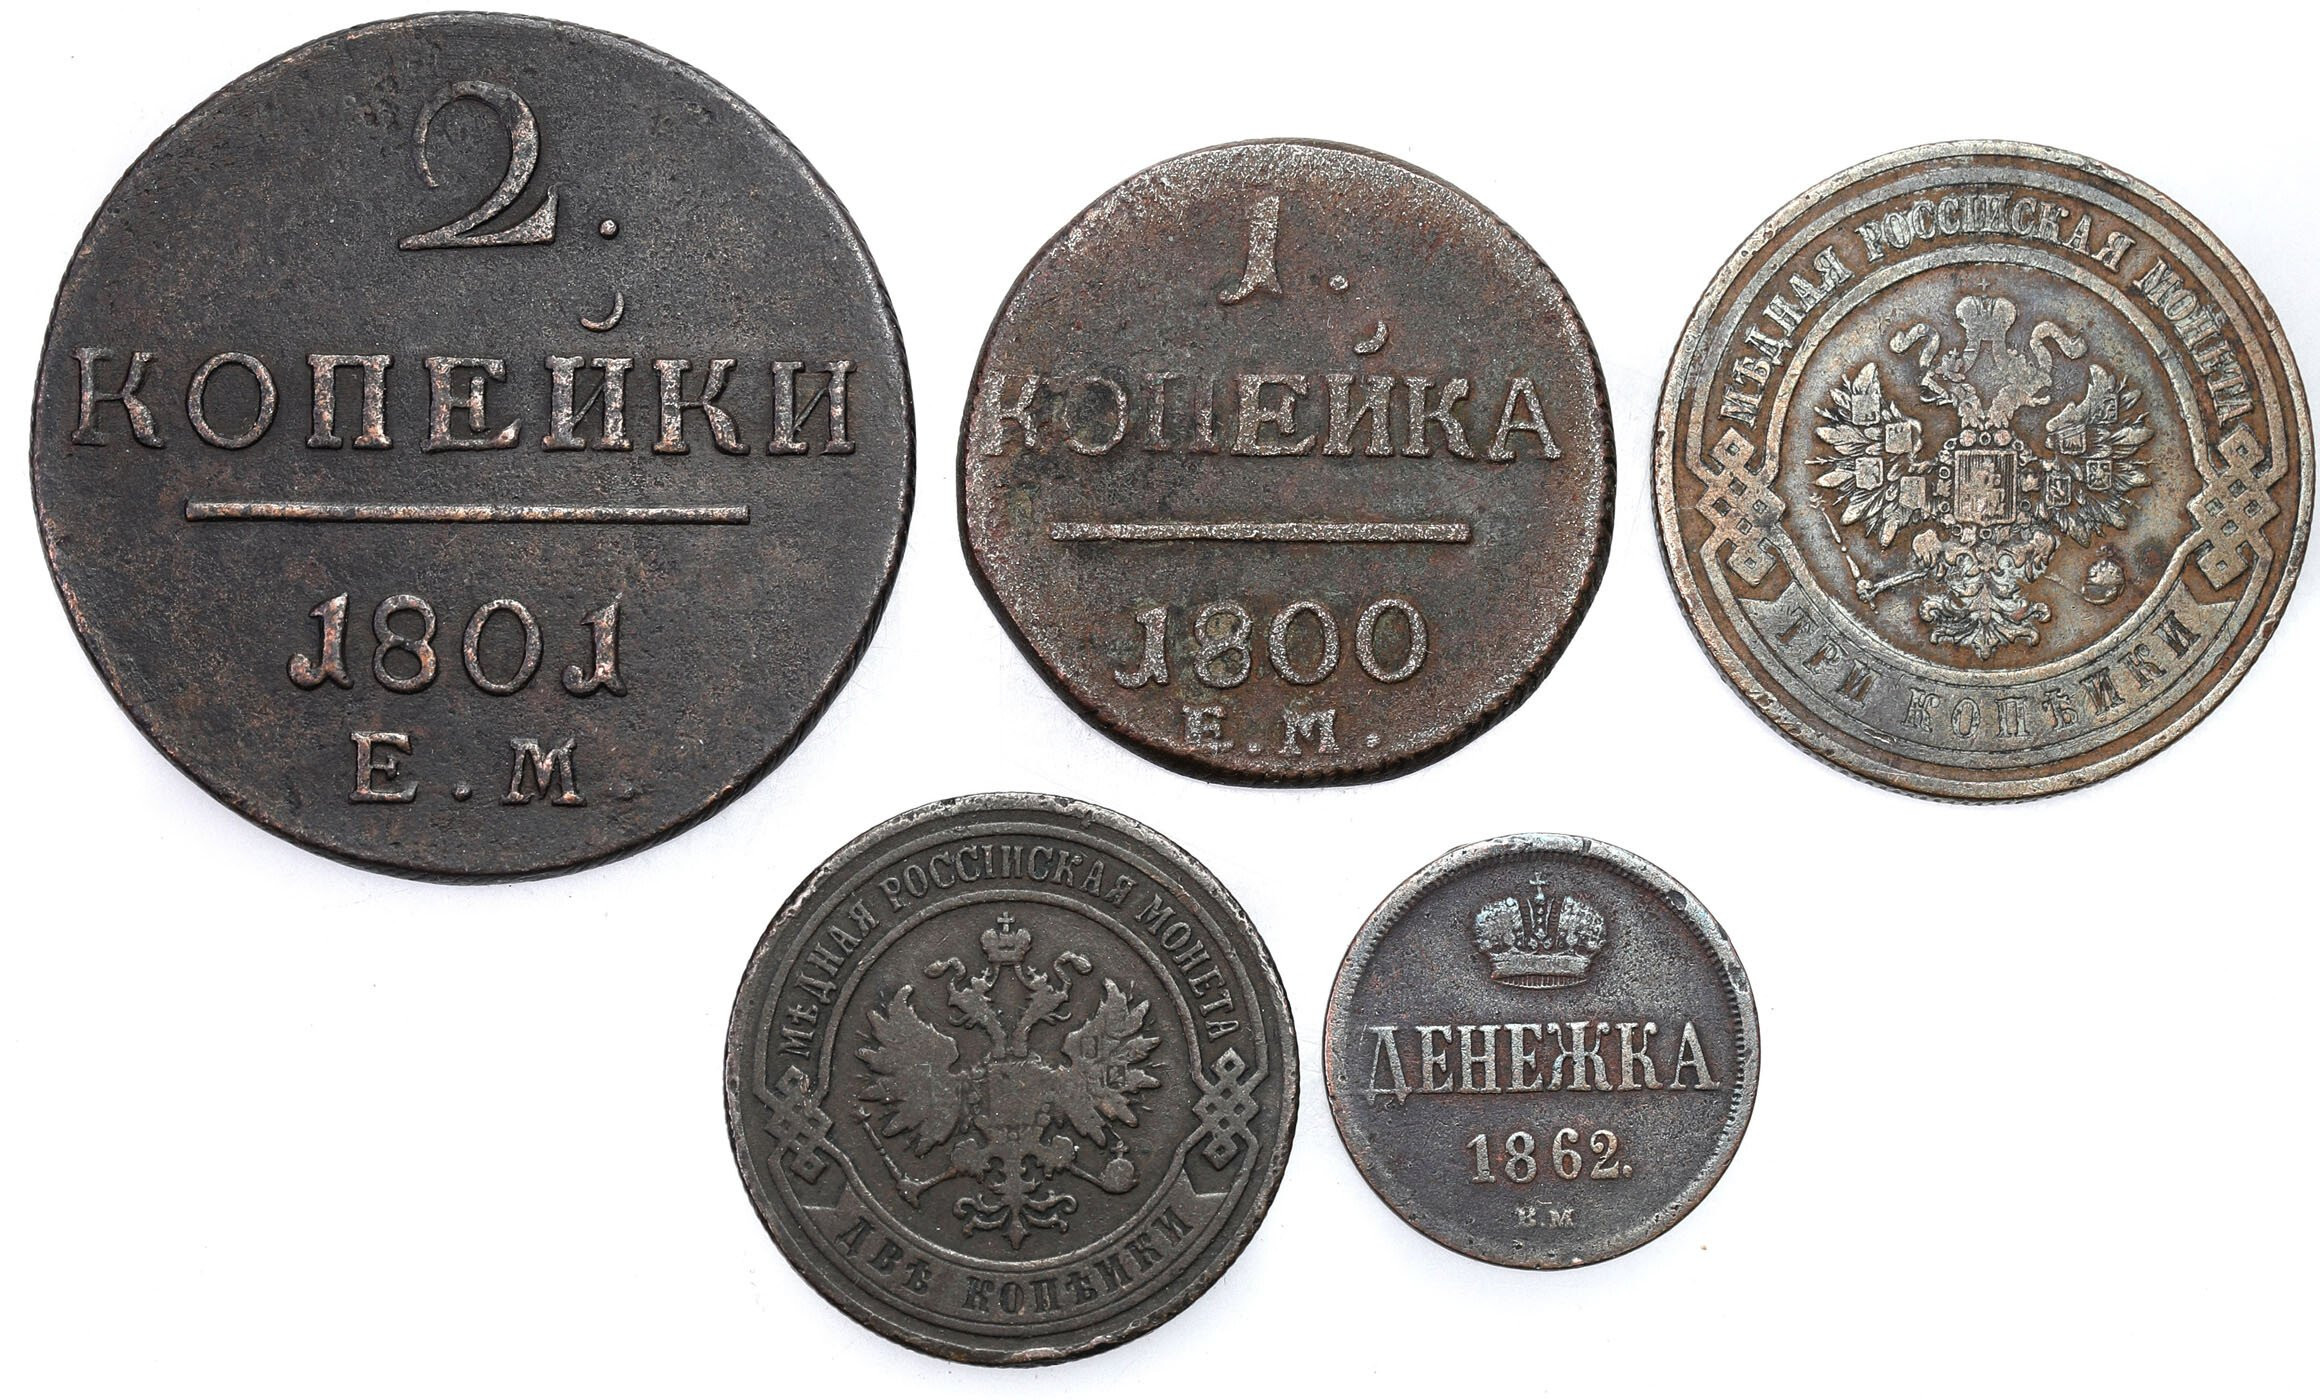 Rosja. Dienieżka 1862, 1-3 kopiejki 1800-1911, zestaw 5 monet